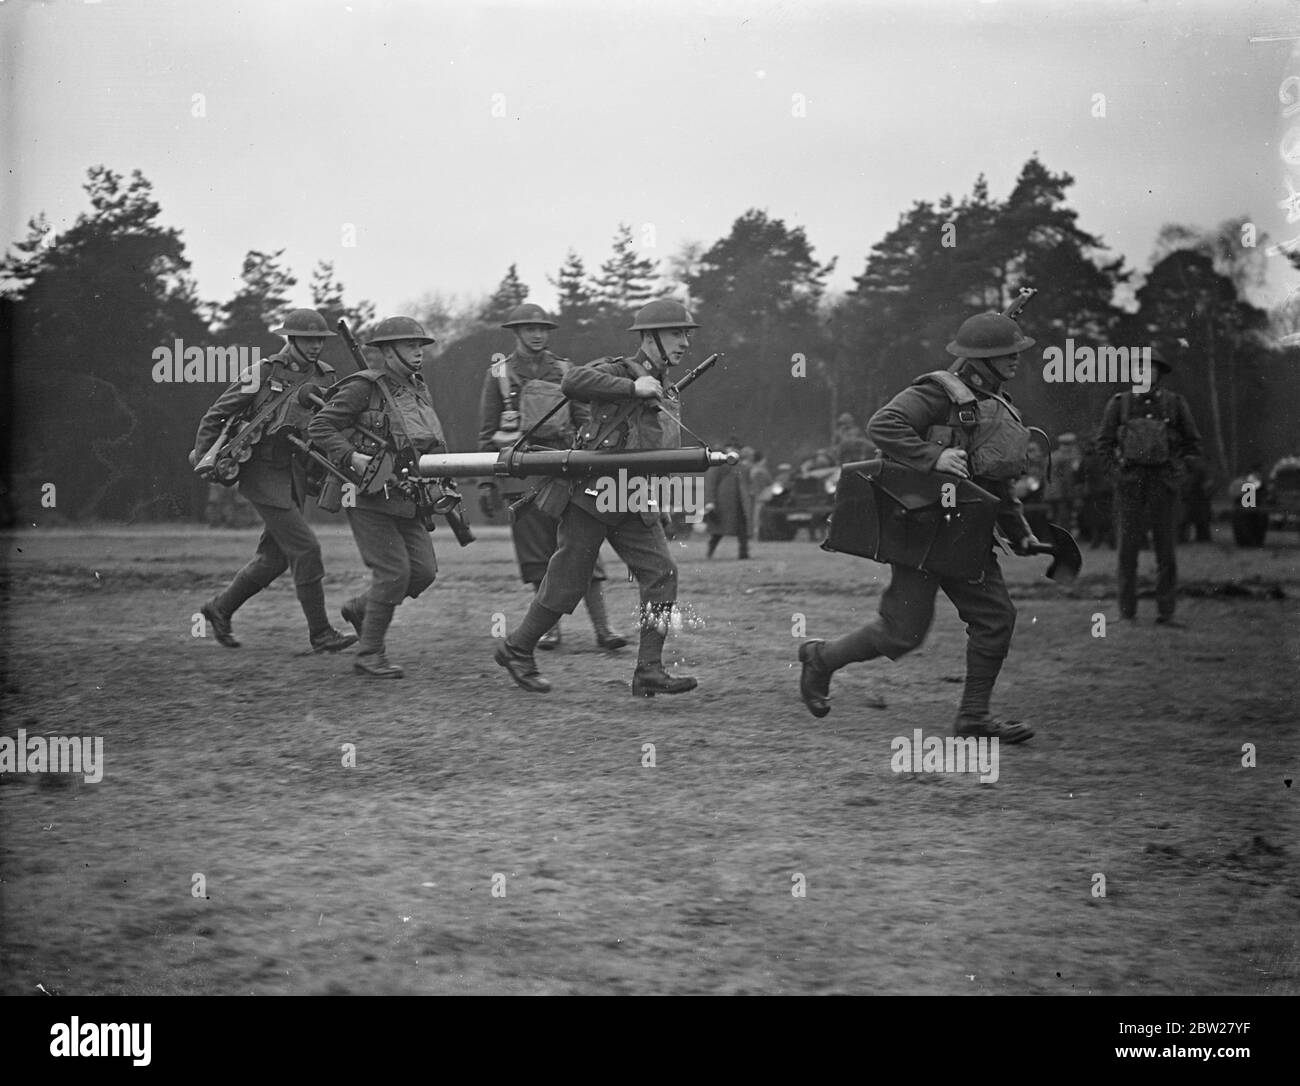 Les derniers équipements et entraînement de l'armée britannique ont été démontrés à Aldershot les derniers équipements et l'entraînement des détachements d'infanterie de l'armée britannique ont été démontrés par le 1er Batalion le South Staffordshire Regiment dans une série d'exercices au camp d'Aldershot, Hampshire. Des expositions de photos, une équipe de mortiers légère prête à passer à l'action. Le mortier léger de 3 pouces est capable de tirer 40 obus par minute. 21 janvier 1938 Banque D'Images